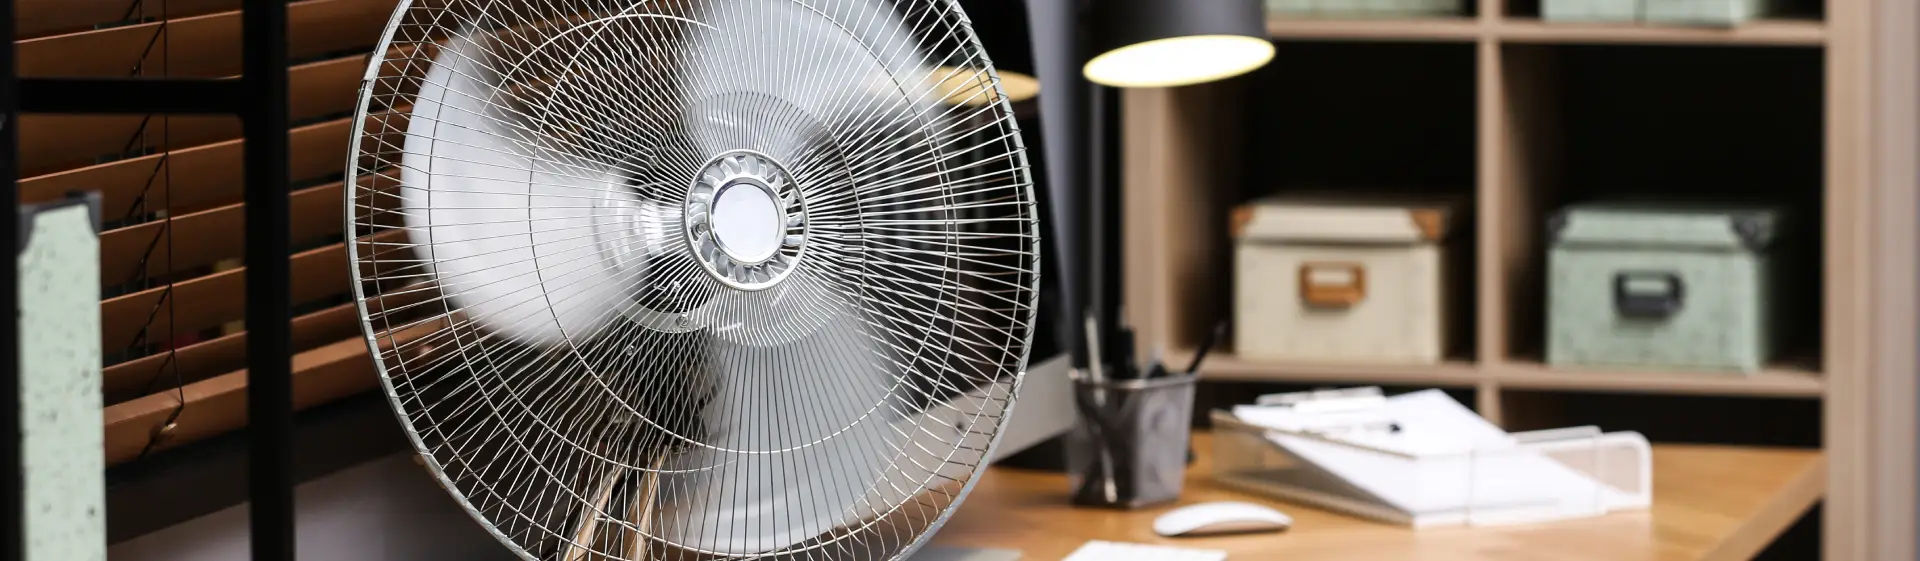 Busca Explica: Como desmontar ventilador em casa